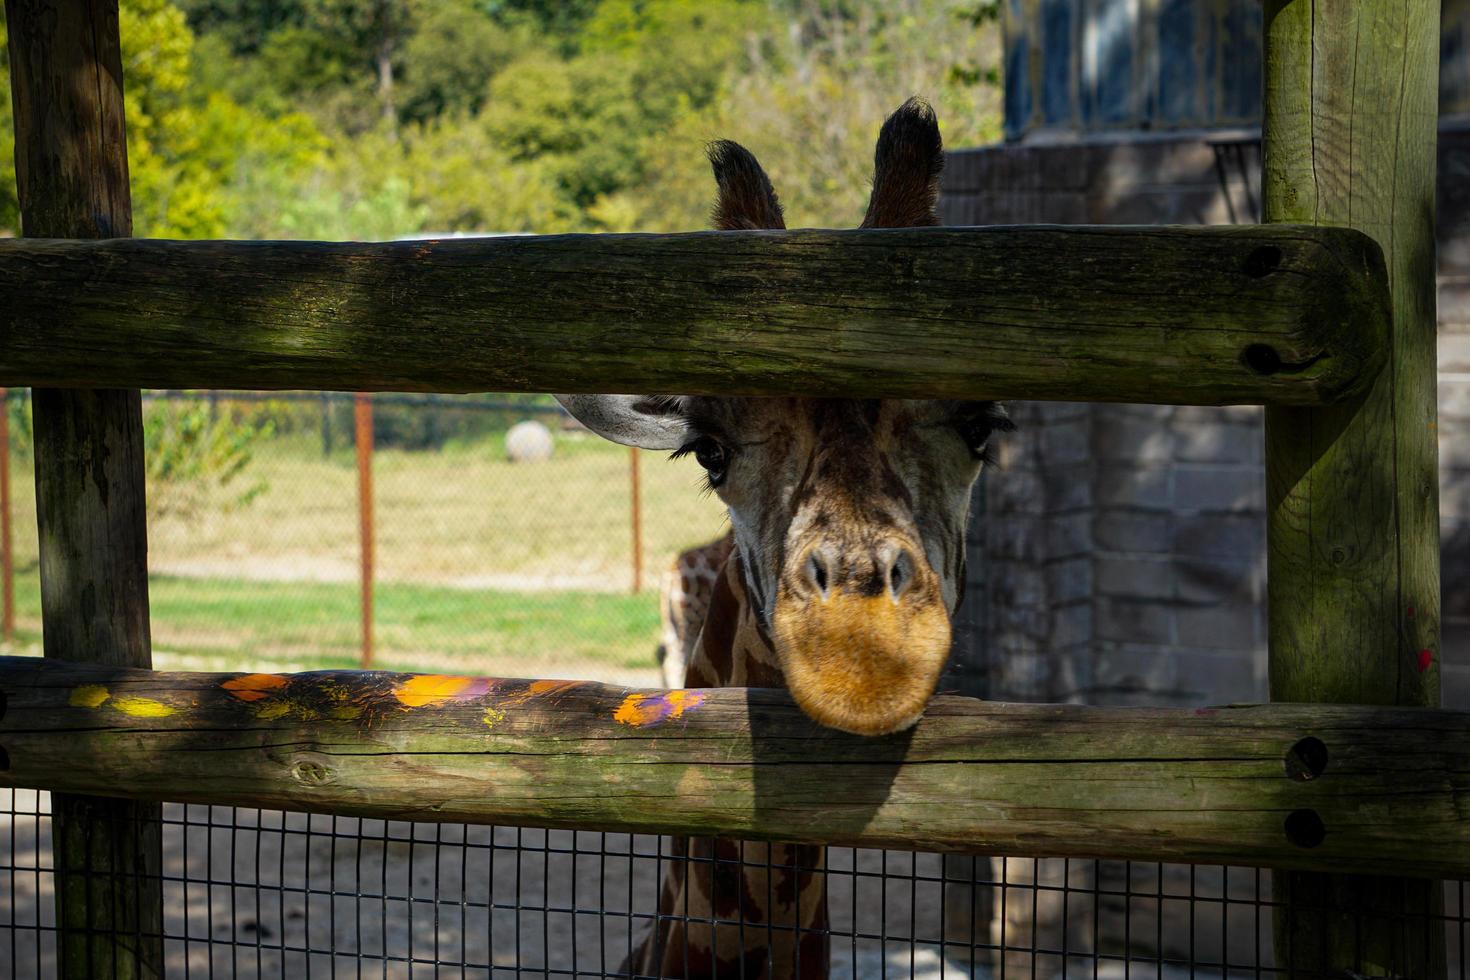 giraf tuurt door reling in dierentuin foto